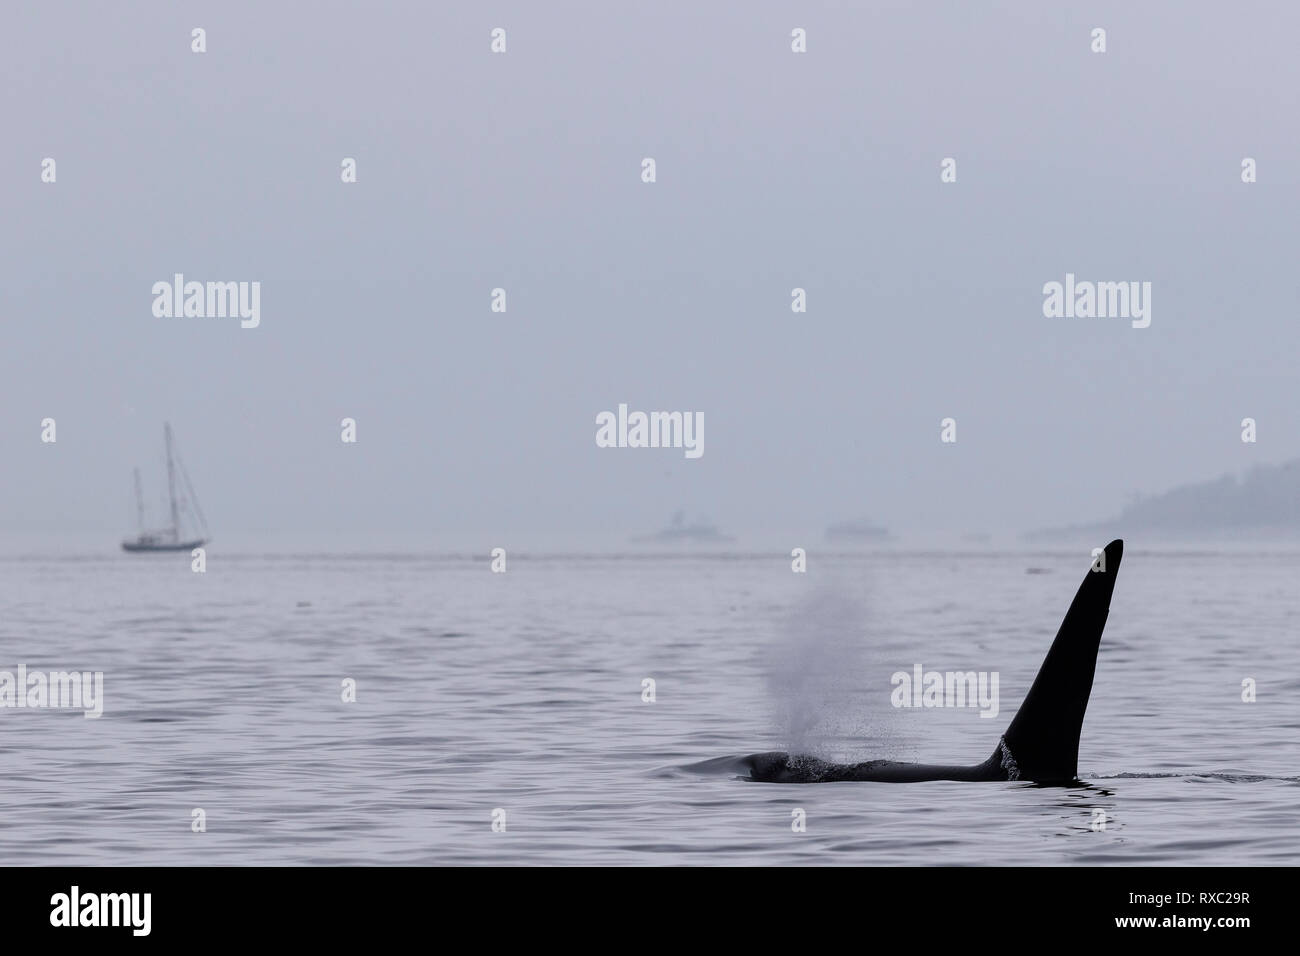 Tranquila escena de niebla con una orca macho residente en el norte (ballena asesina, Orcinus orca) y un velero en Blackfish Sound, Territorio de las primeras Naciones, Columbia Británica, Canadá. Foto de stock